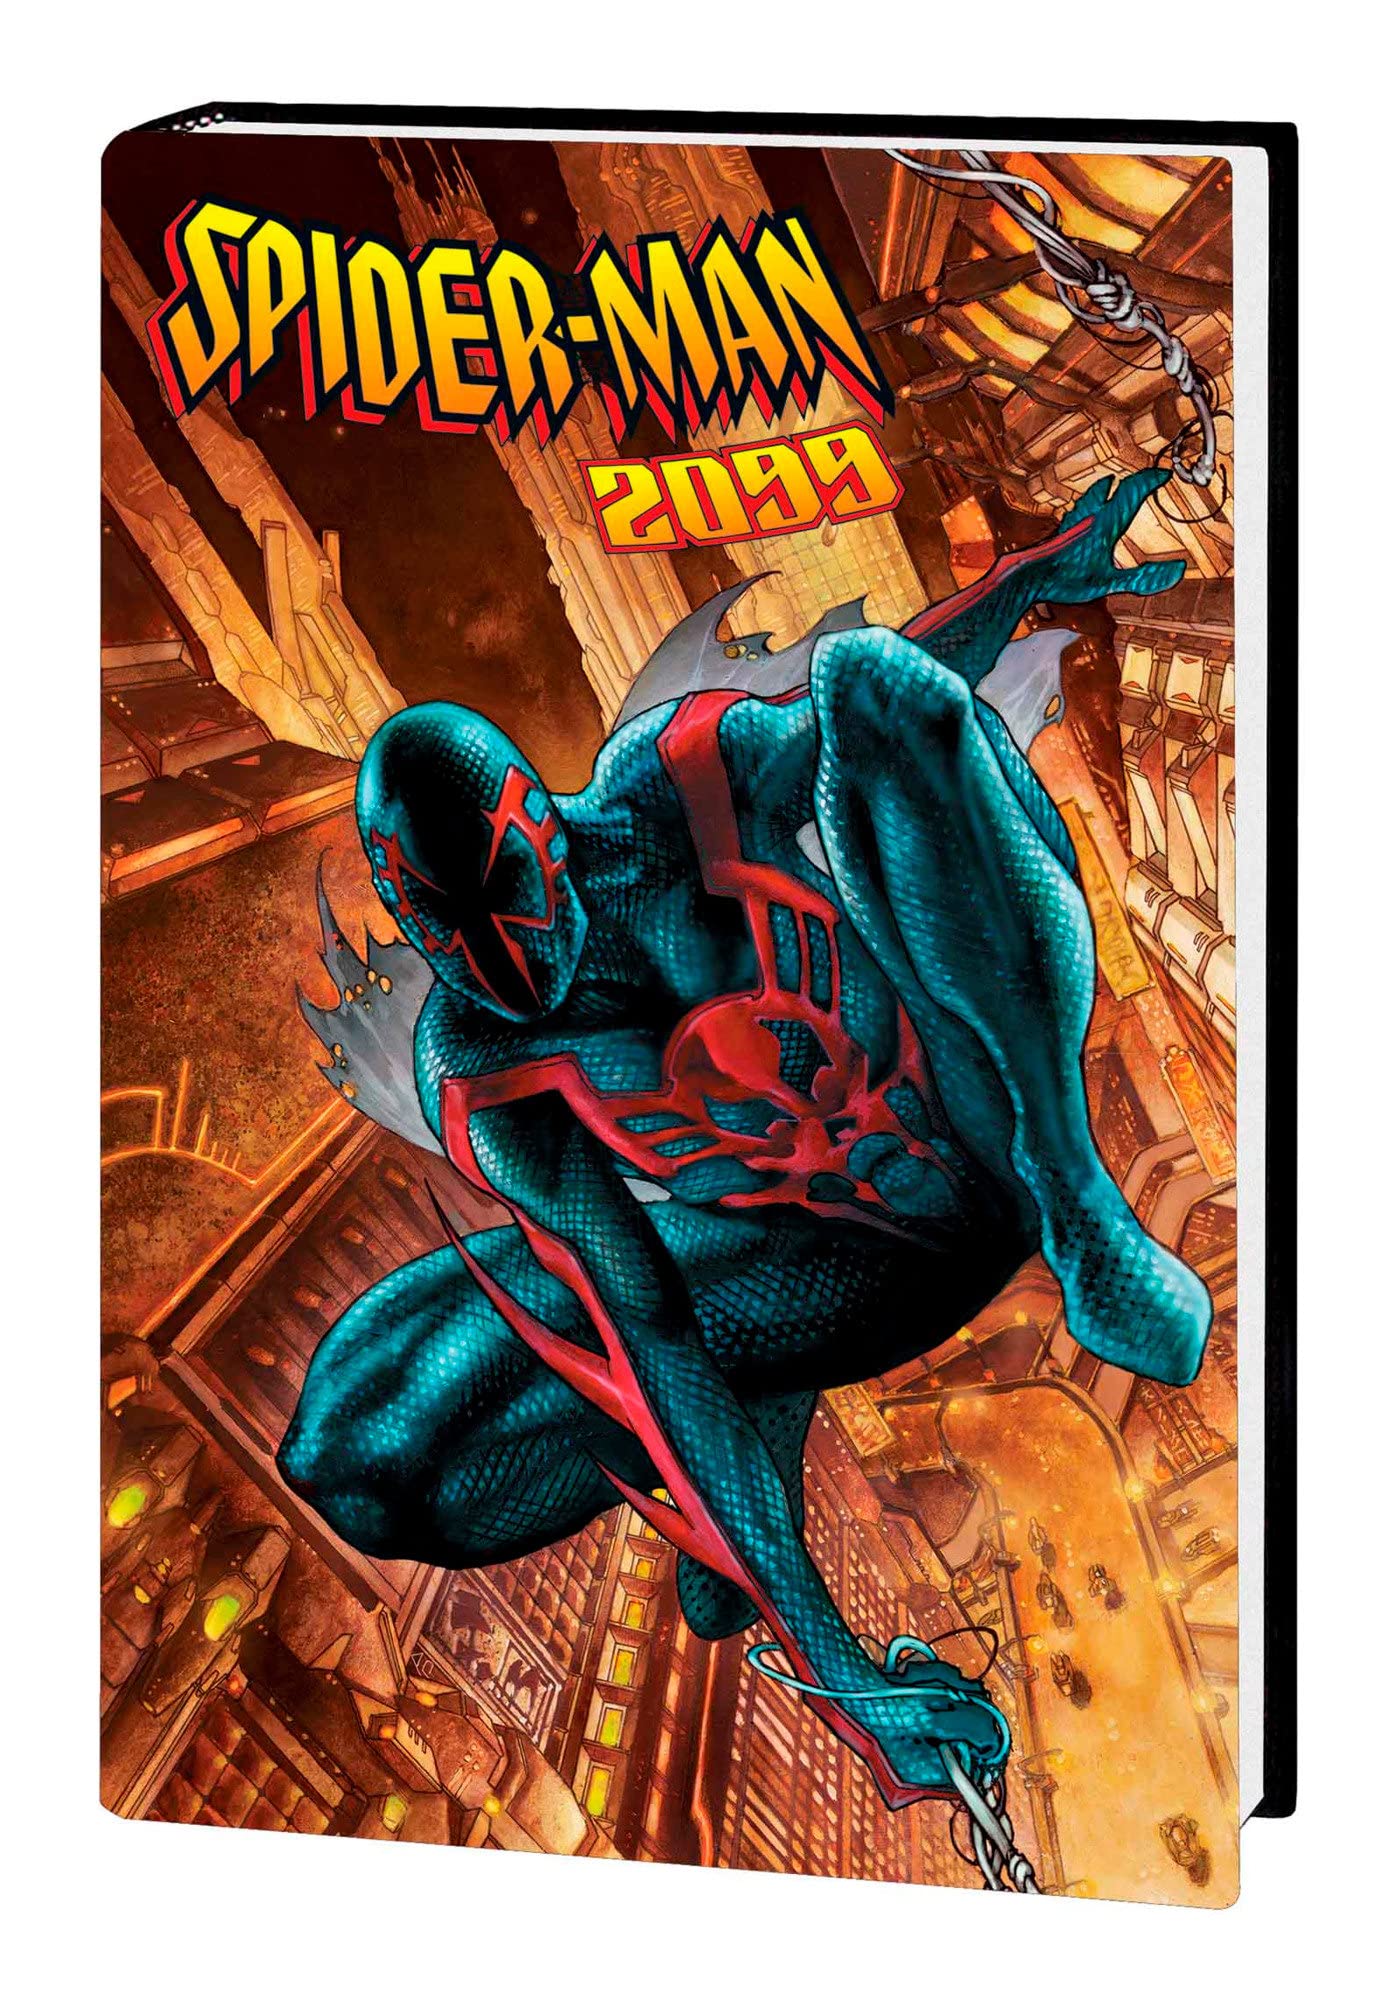 SPIDER-MAN 2099 OMNIBUS VOL. 2 (Spider-Man 2099, 2)